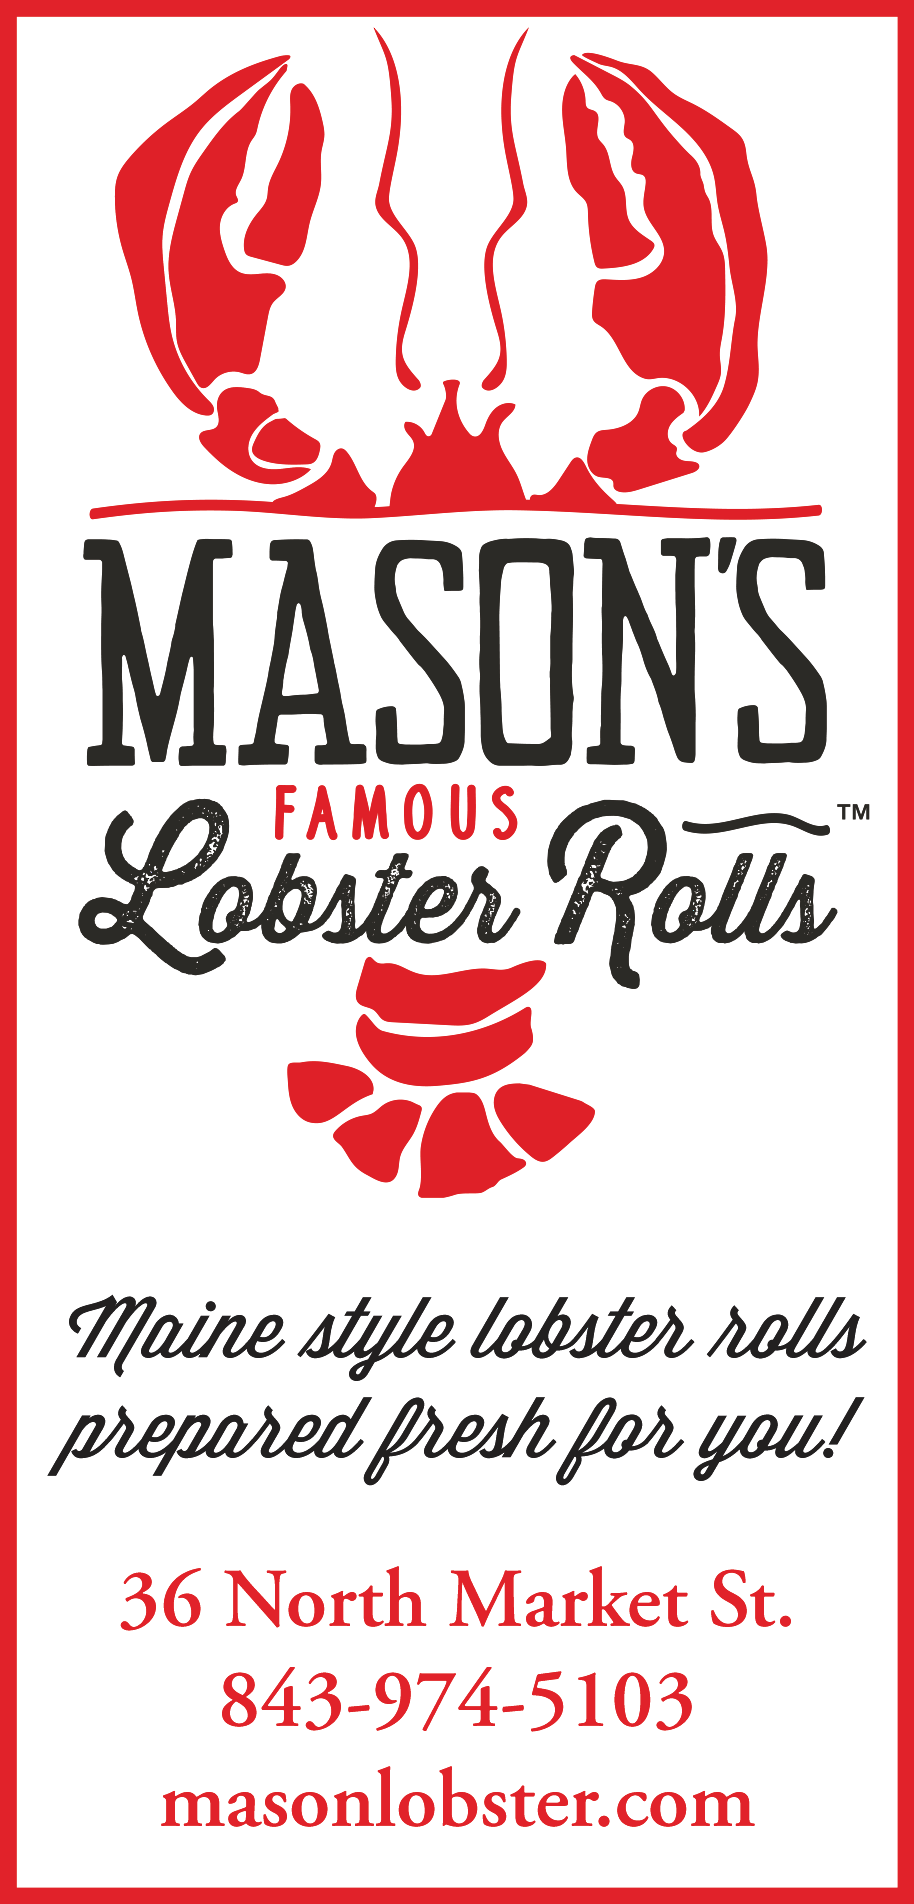 Mason's Lobster Rolls Print Ad